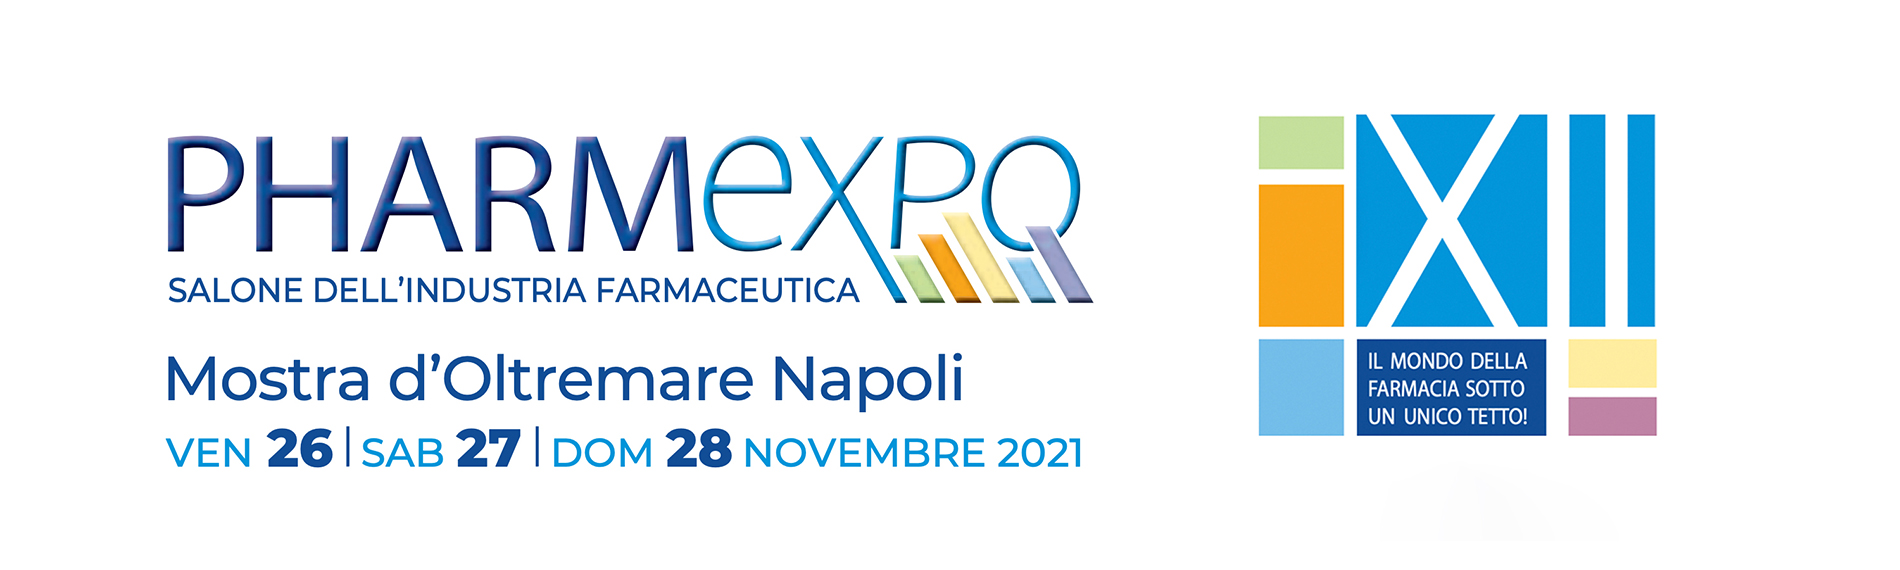 Pharmexpo. Mostra d’Oltremare a Napoli, 26-28 novembre 2021